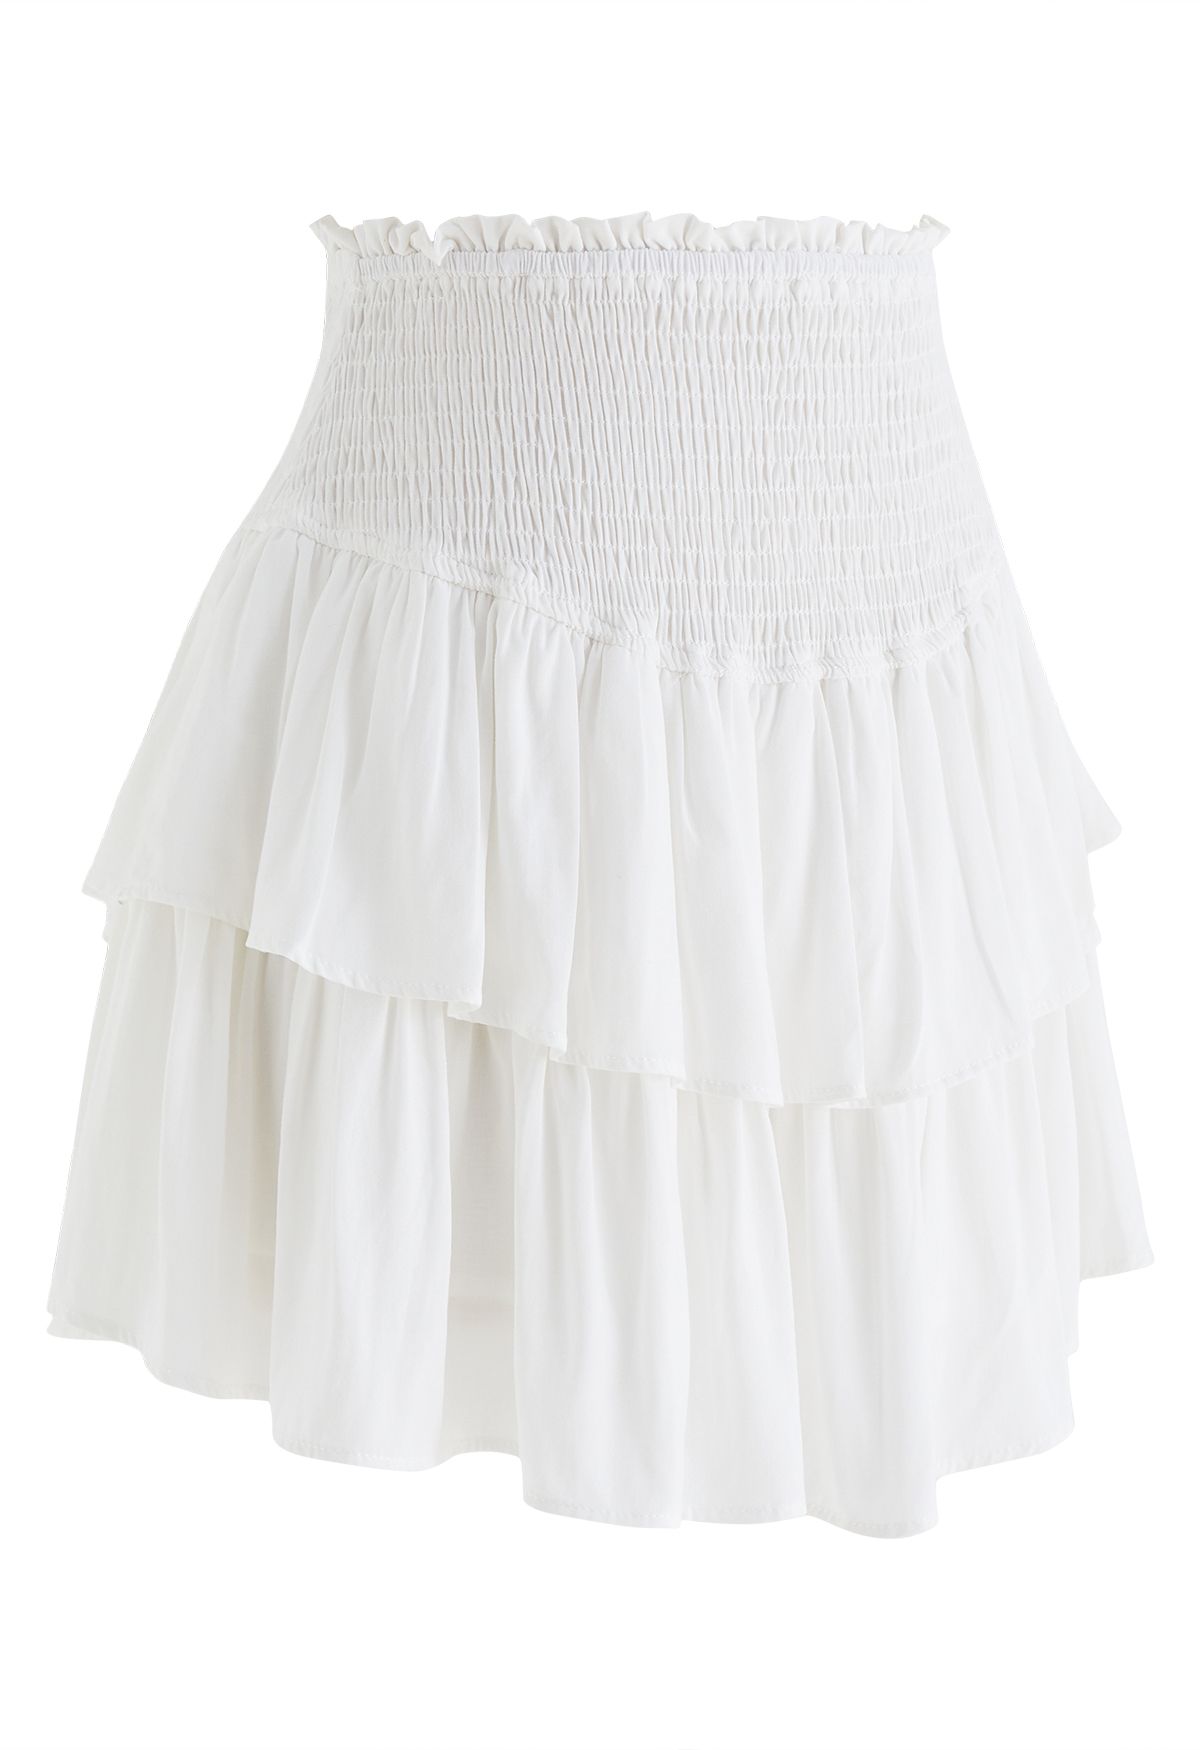 Tiered Ruffle Shirred Waist Mini Skirt in White